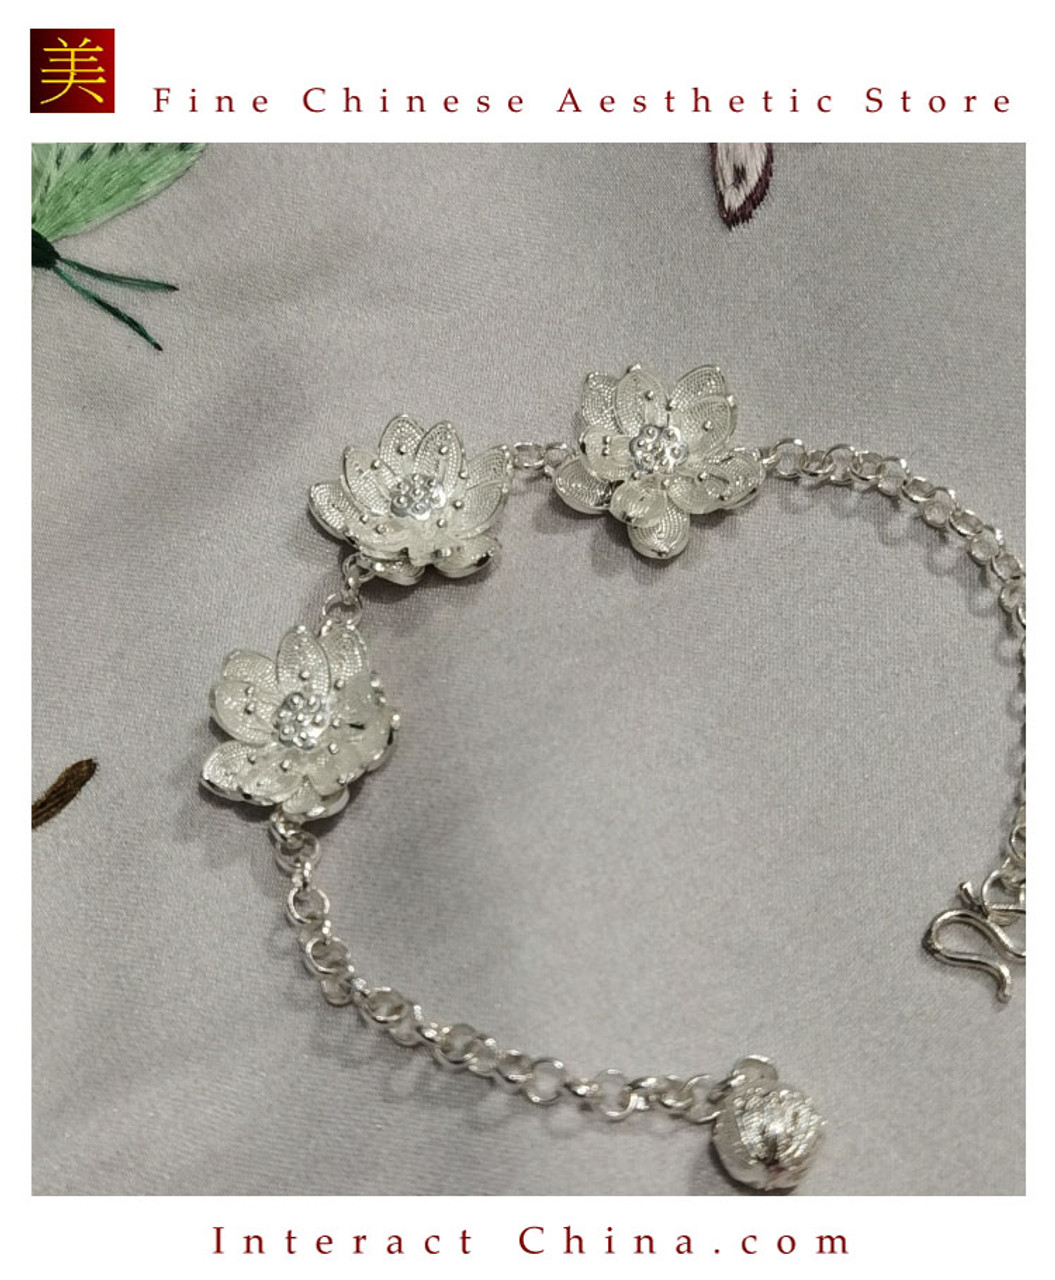 999 sterling silver pink flower parent-child bracelet, full-month